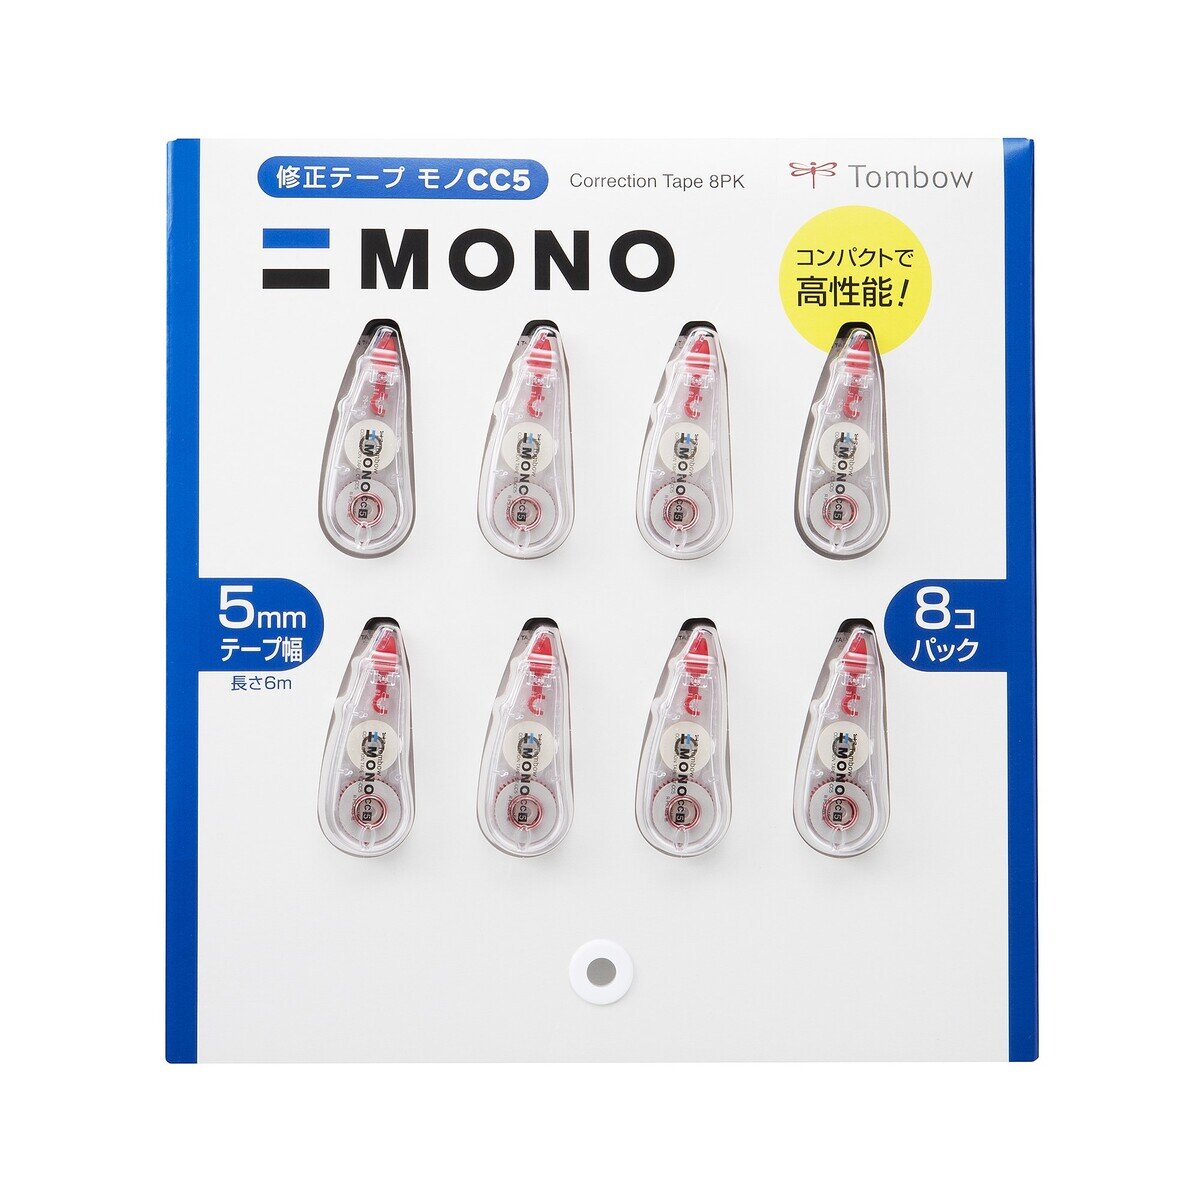 トンボ鉛筆 修正テープ MONO CC5 5mm x 6m 8個セット | Costco Japan